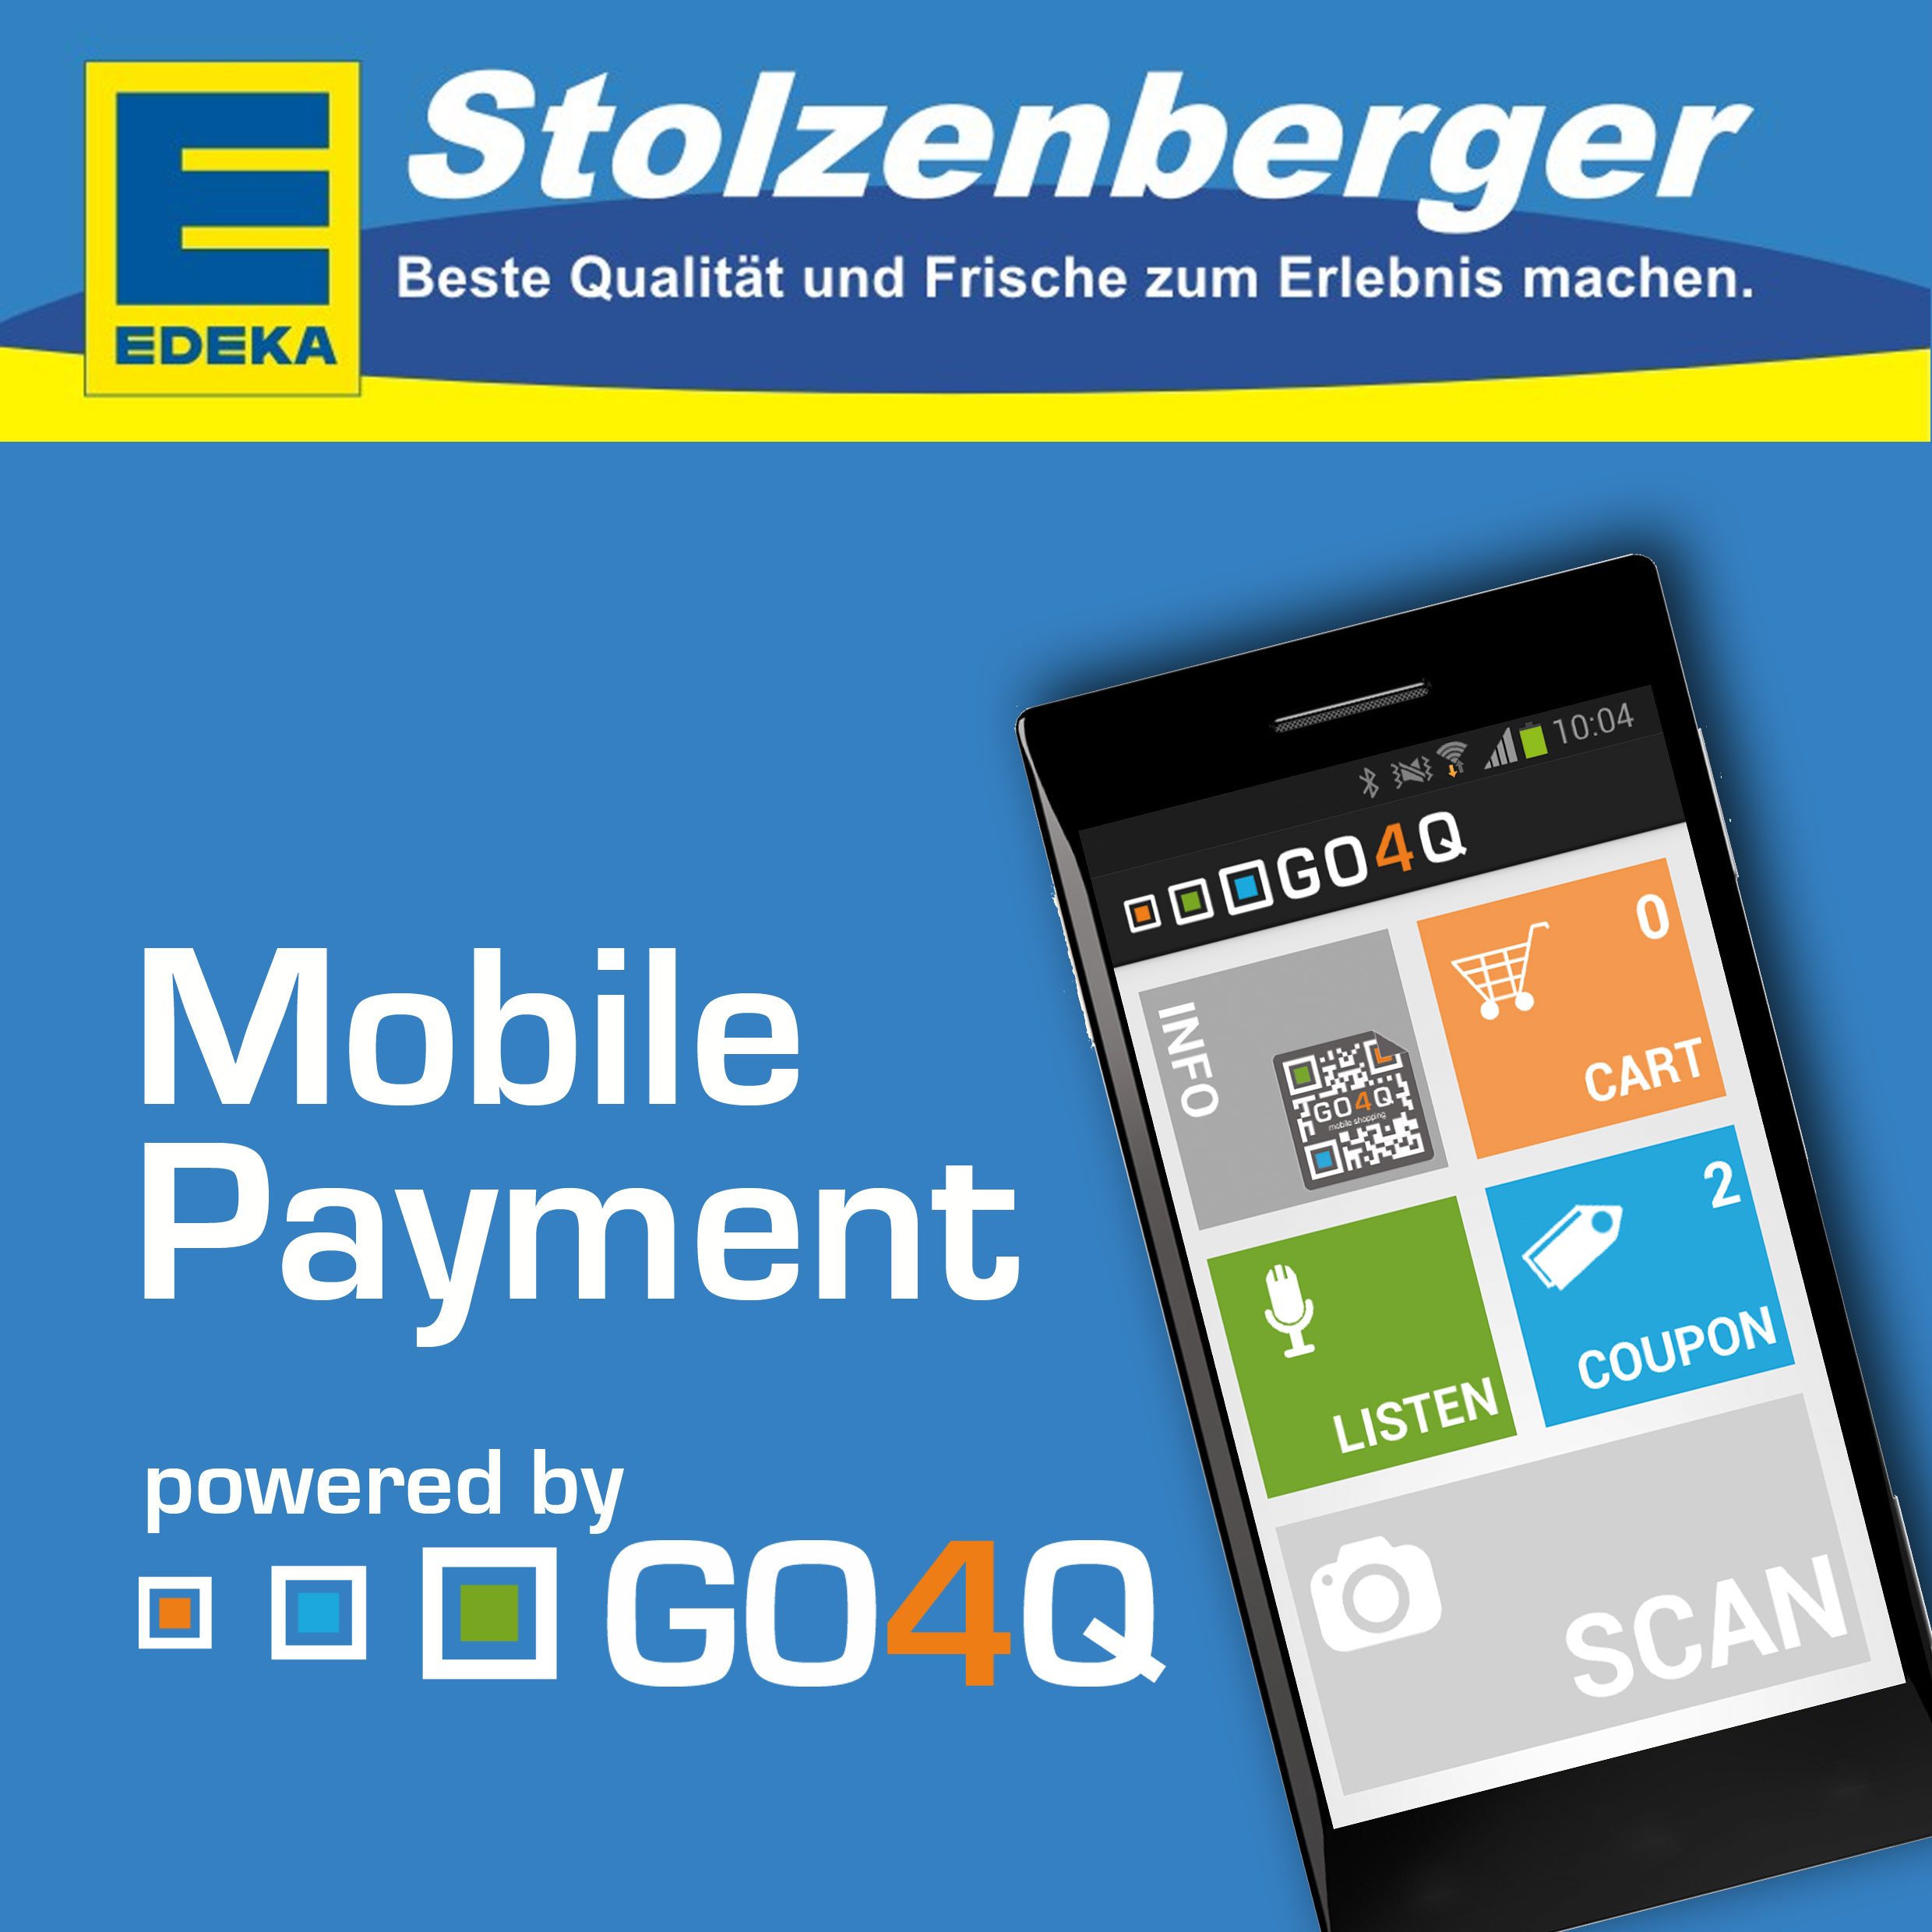 Handy News @ Handy-Infos-123.de | Mobile Payment mit GO4Q jetzt auch bei EDEKA Stolzenberger